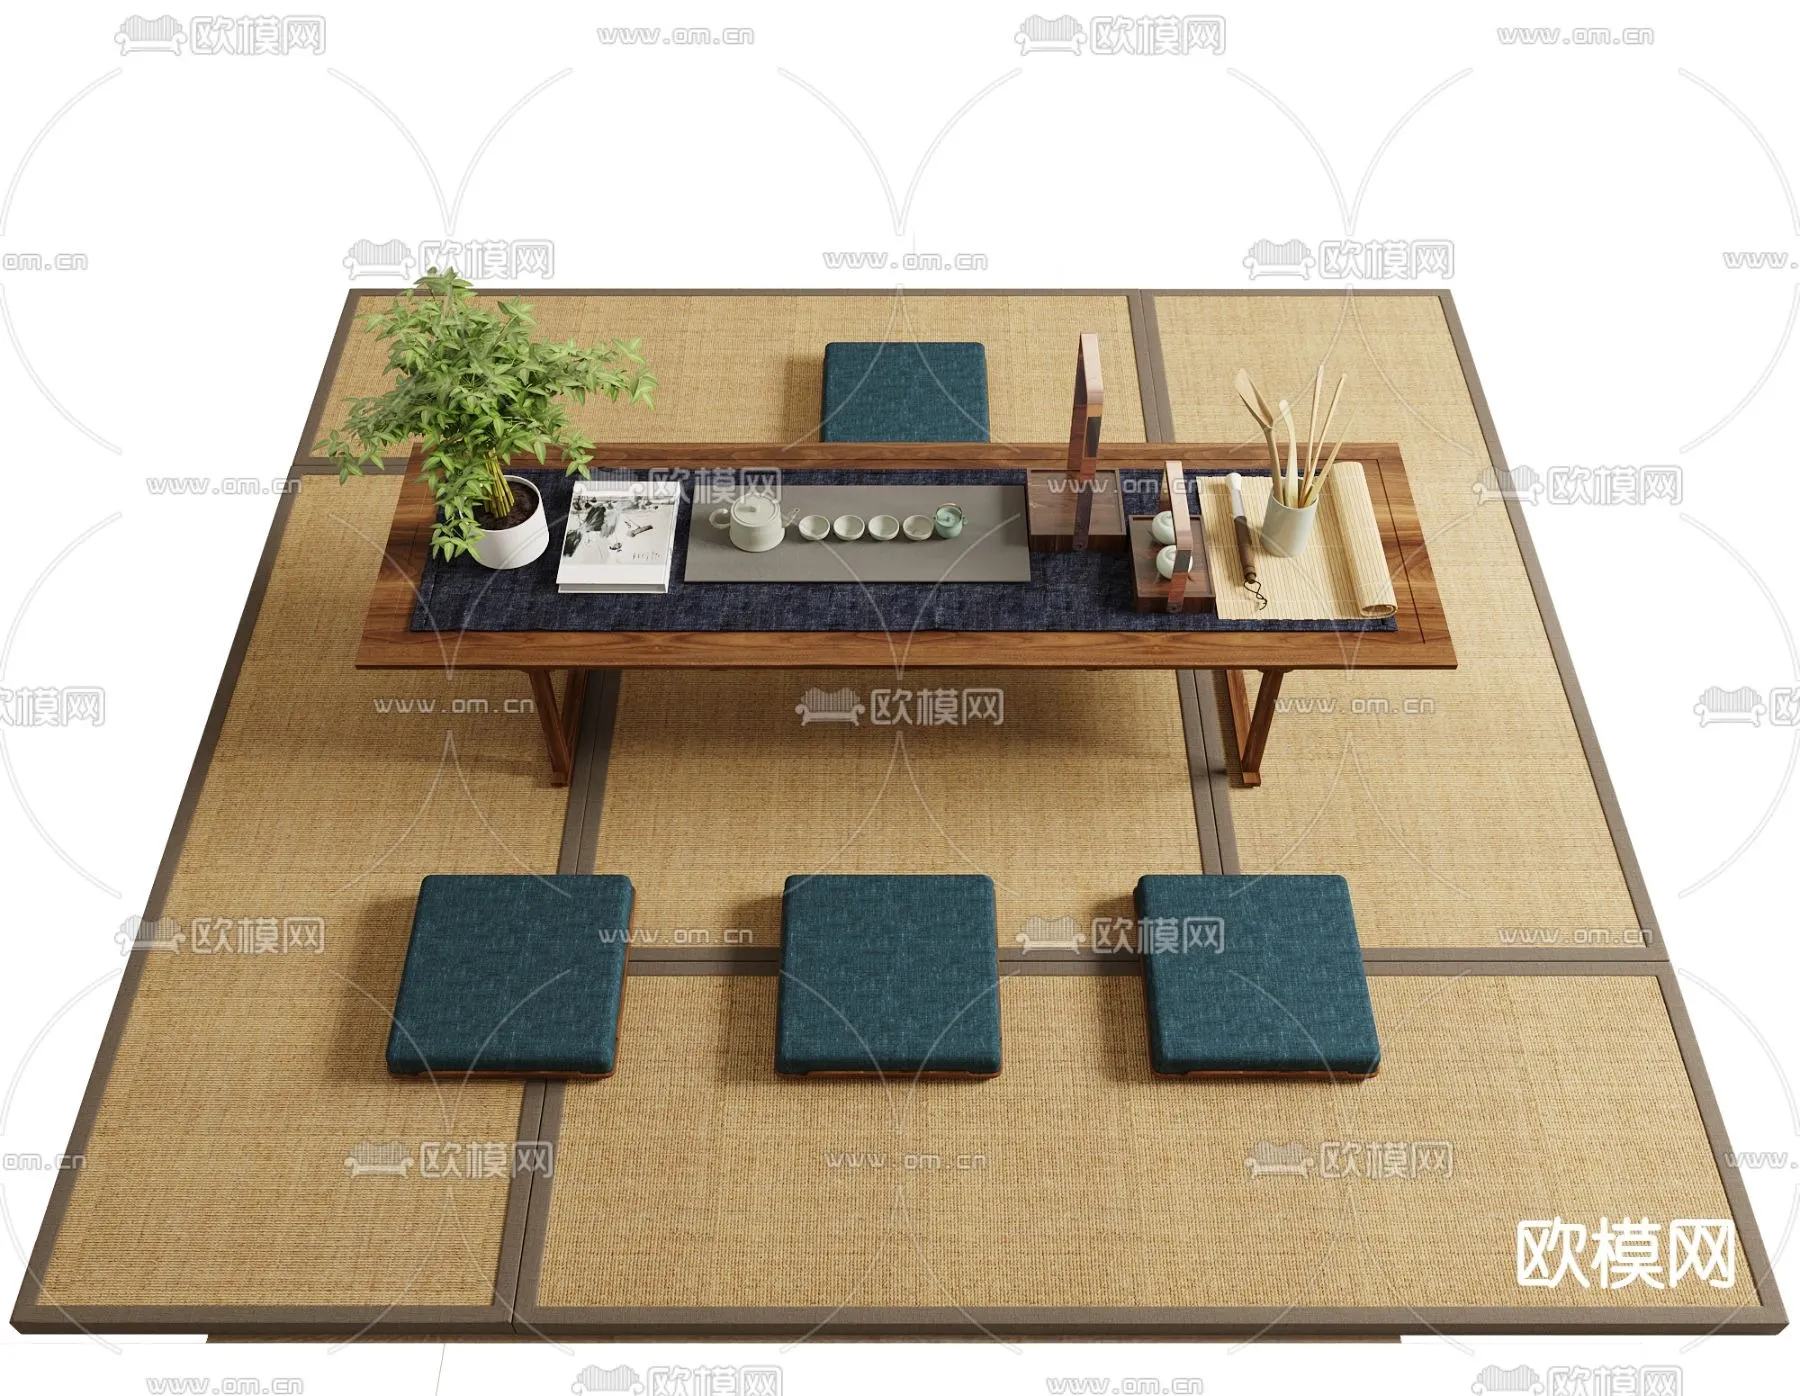 TEA TABLES 3D MODELS – 030 – PRO